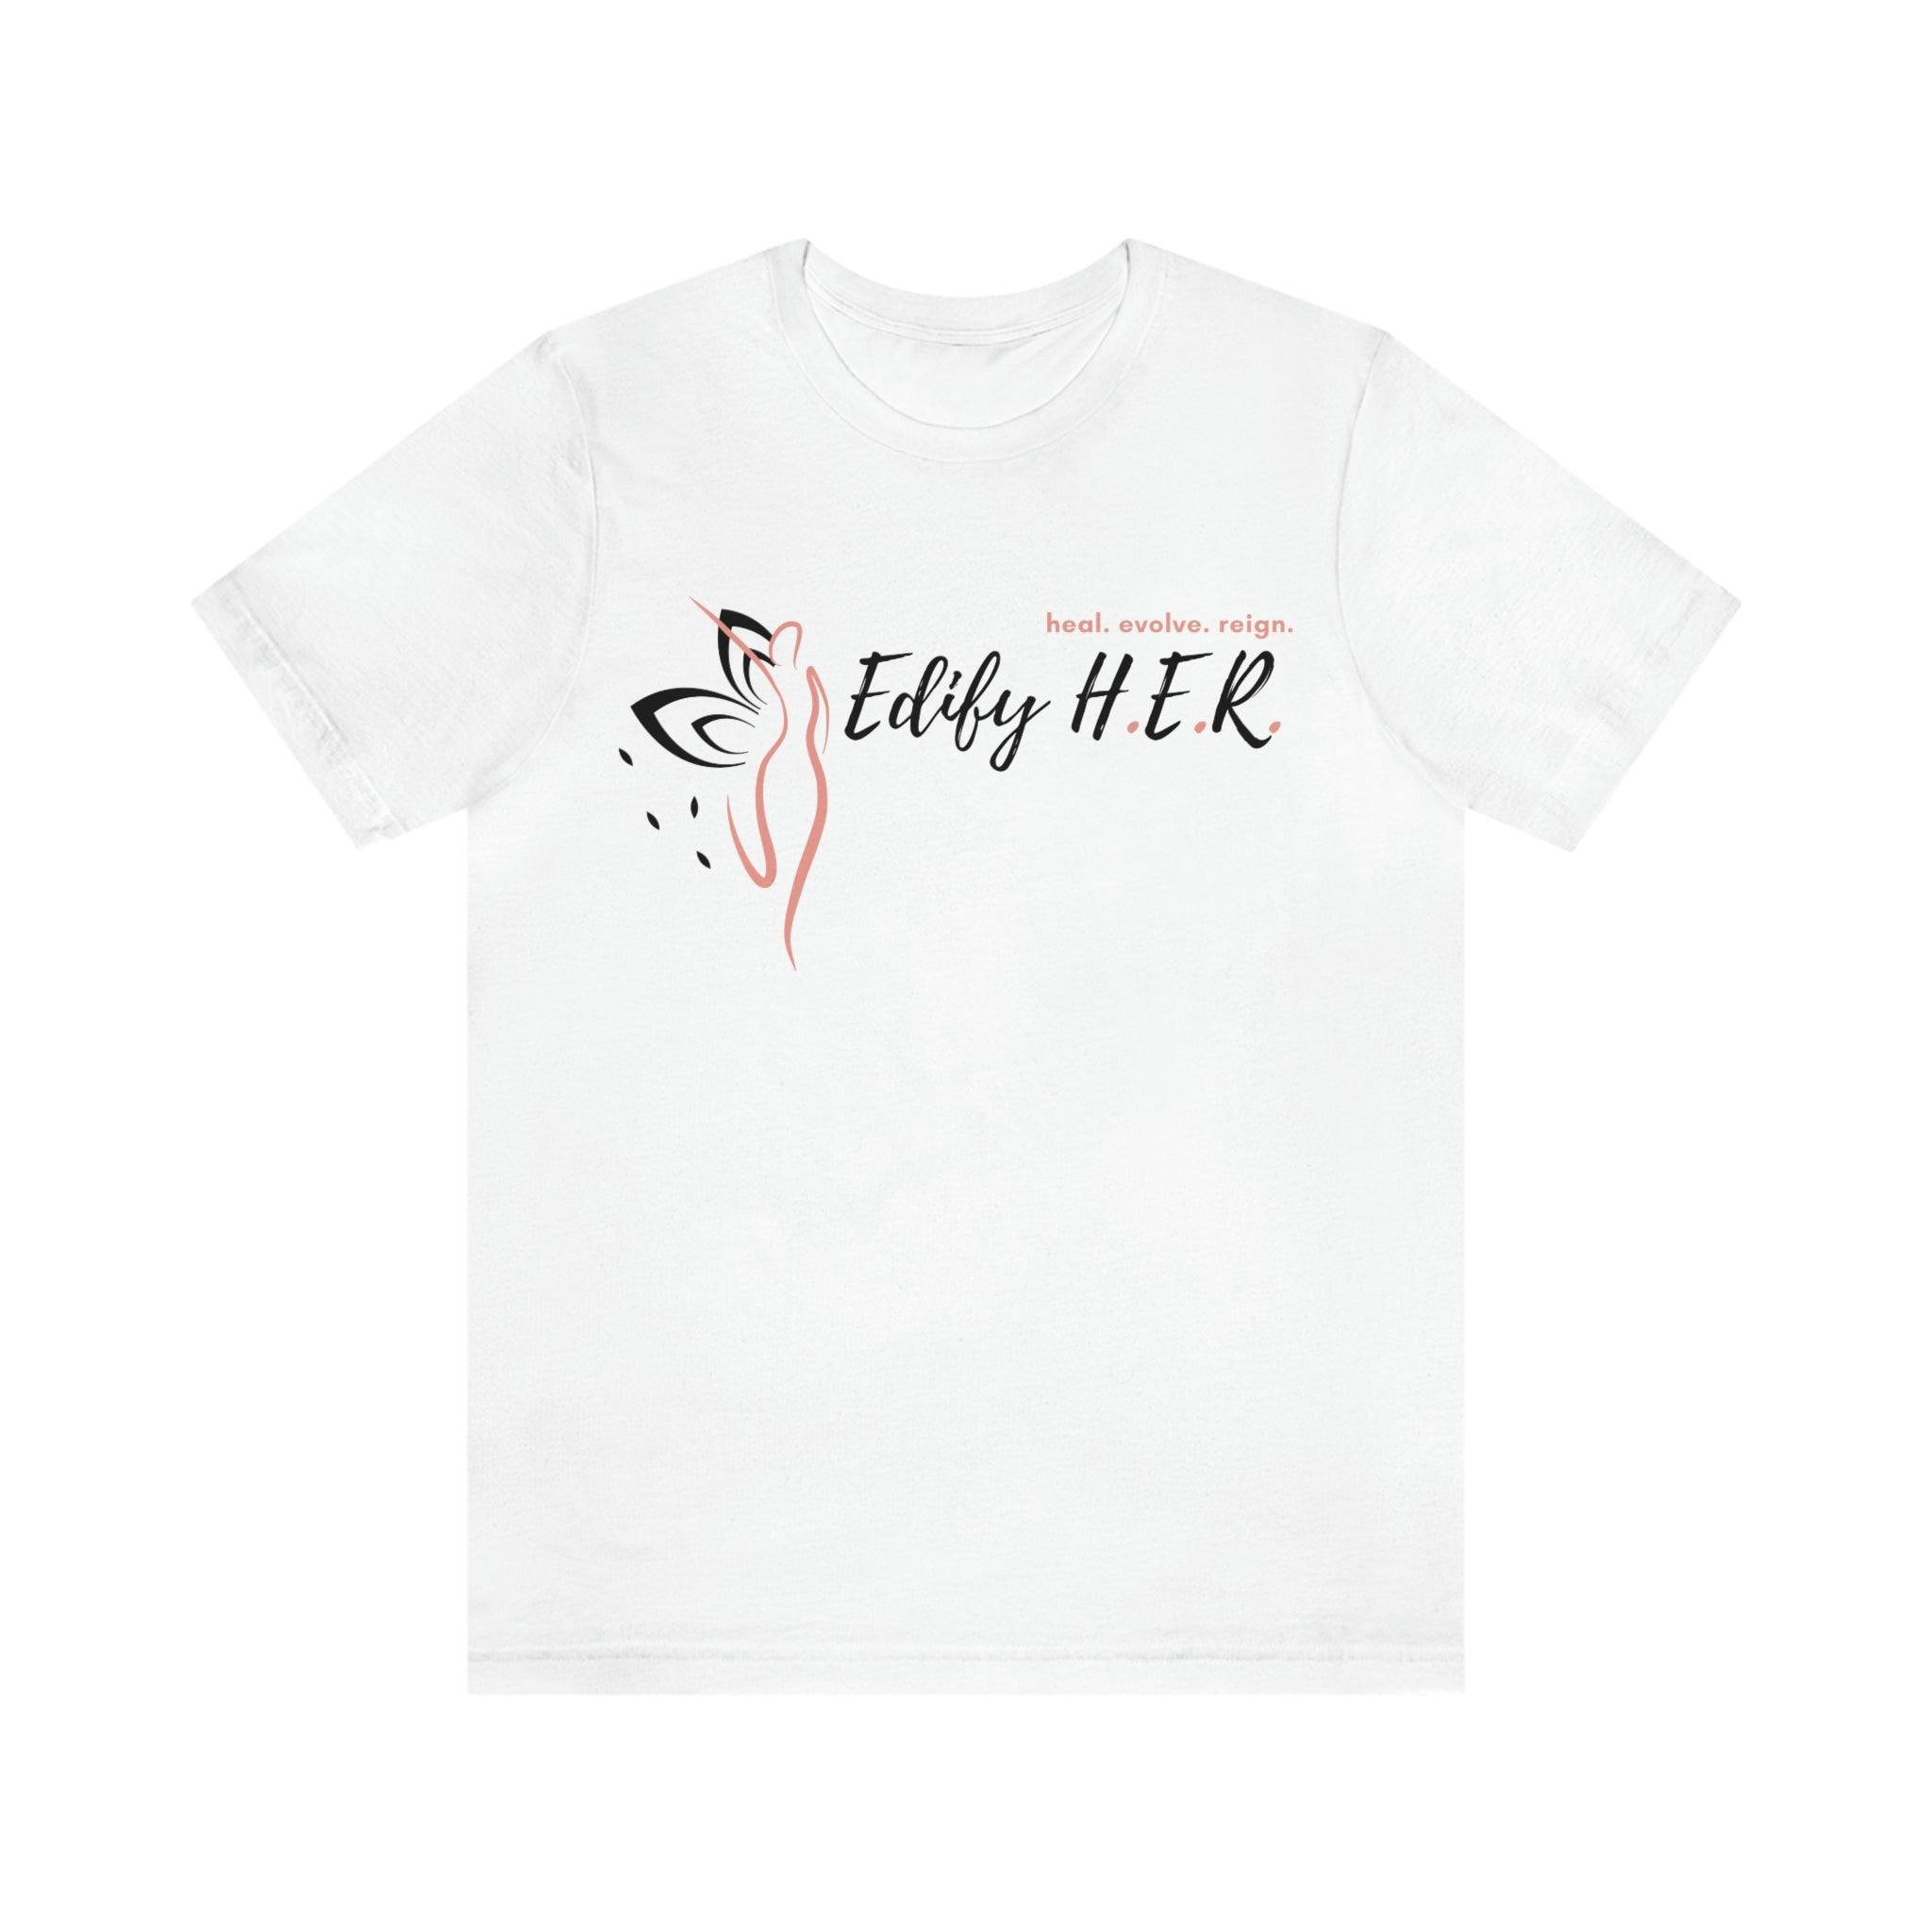 Edify H.E.R. Logo Tee